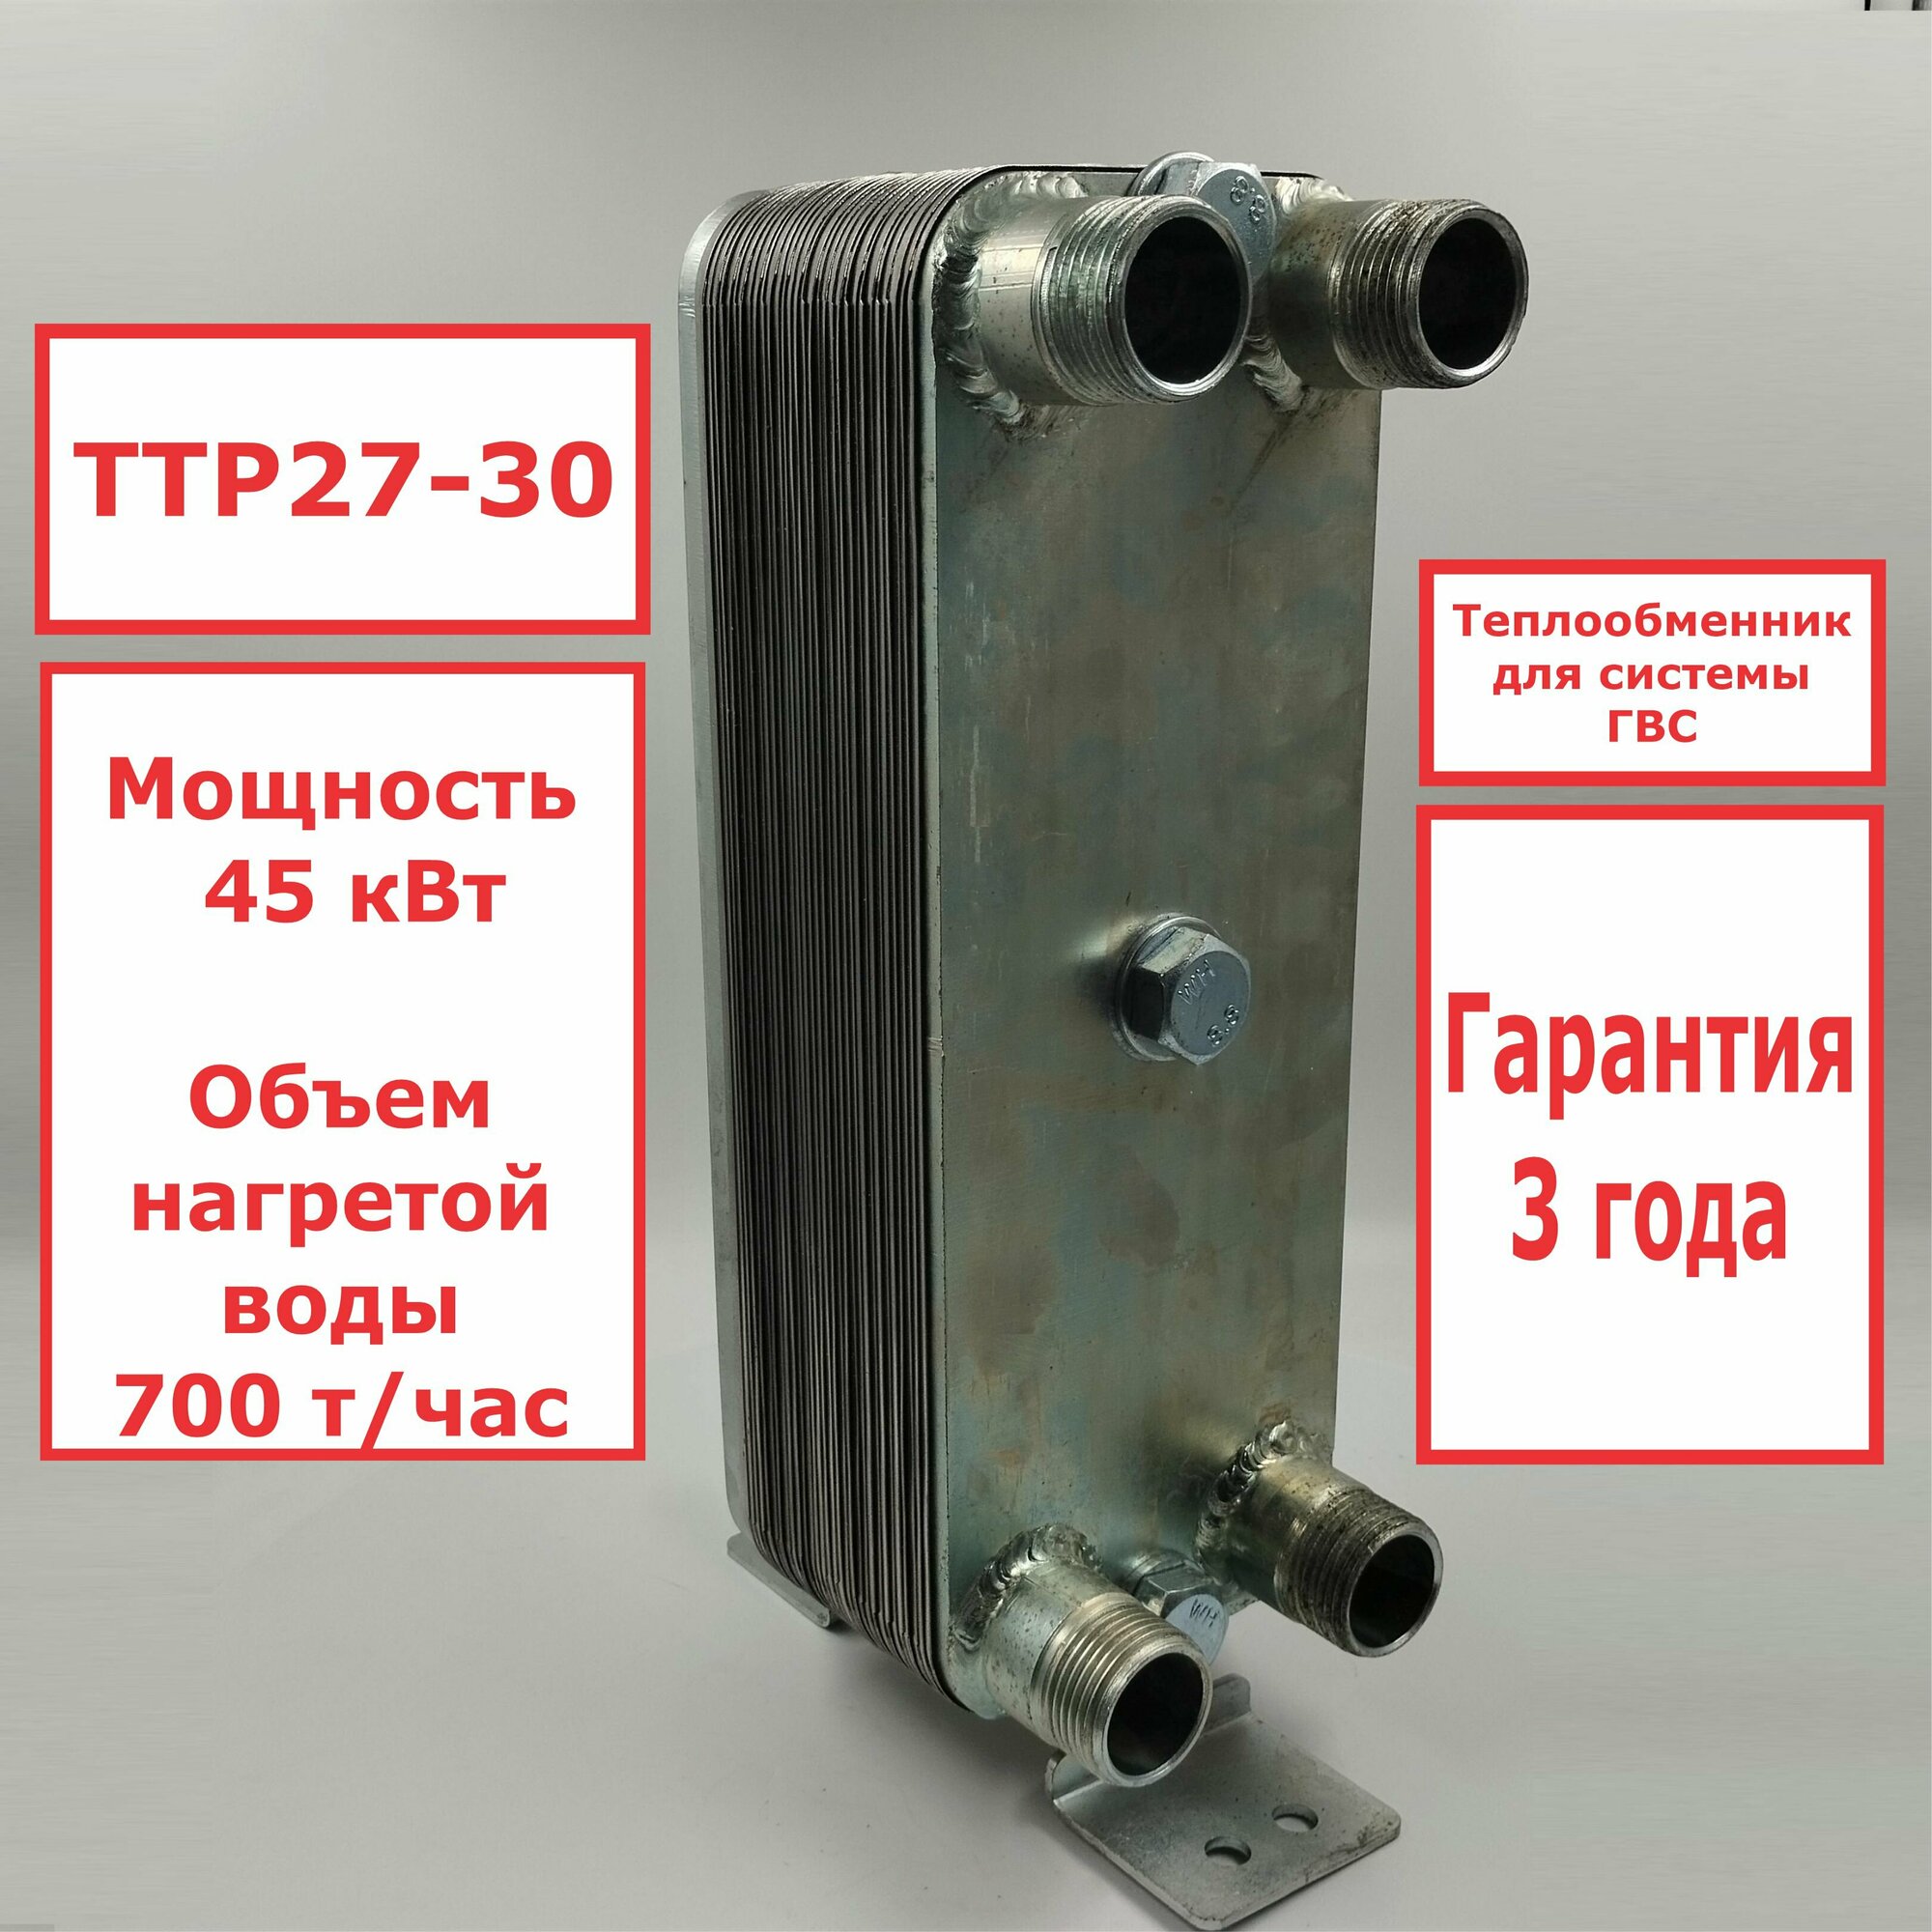 Микро разборный пластинчатый теплообменник ТТР27-30 для ГВС (45 кВт), 4 точки водоразбора